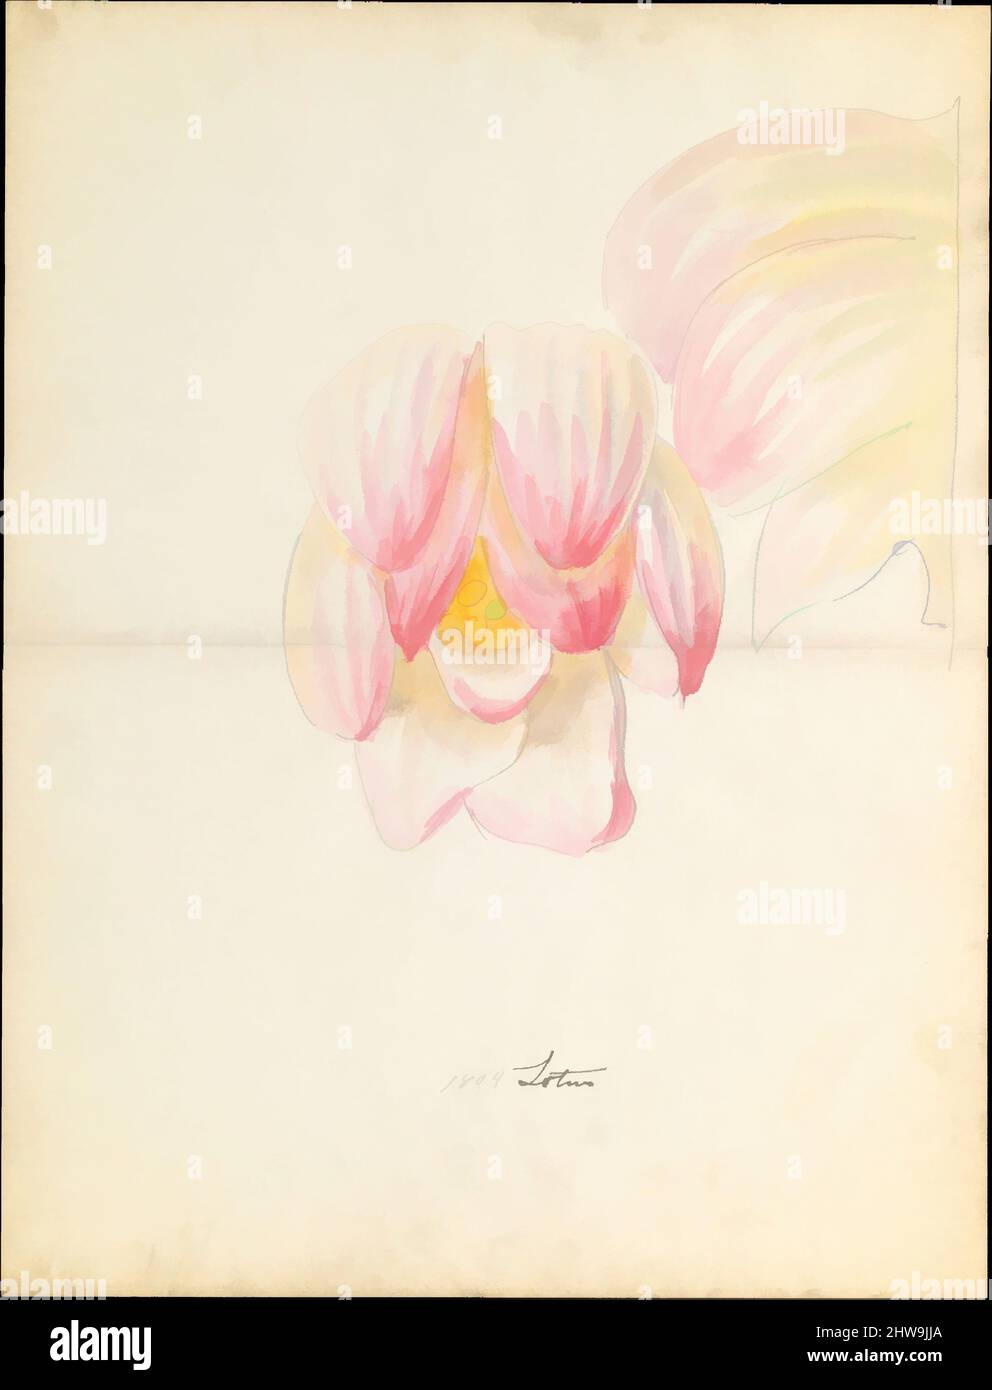 Art inspiré par le dessin de conception de la fleur de lotus de la capitale florale de loggia, Laurelton Hall, ca. 1900–1915, américain, aquarelle, graphite et encre sur papier, 18 3/8 x 14 po. (46,7 x 35,6 cm), dessins, Lenox, Incorporated (établi en 1889, oeuvres classiques modernisées par Artotop avec une touche de modernité. Formes, couleur et valeur, impact visuel accrocheur sur l'art émotions par la liberté d'œuvres d'art d'une manière contemporaine. Un message intemporel qui cherche une nouvelle direction créative. Artistes qui se tournent vers le support numérique et créent le NFT Artotop Banque D'Images